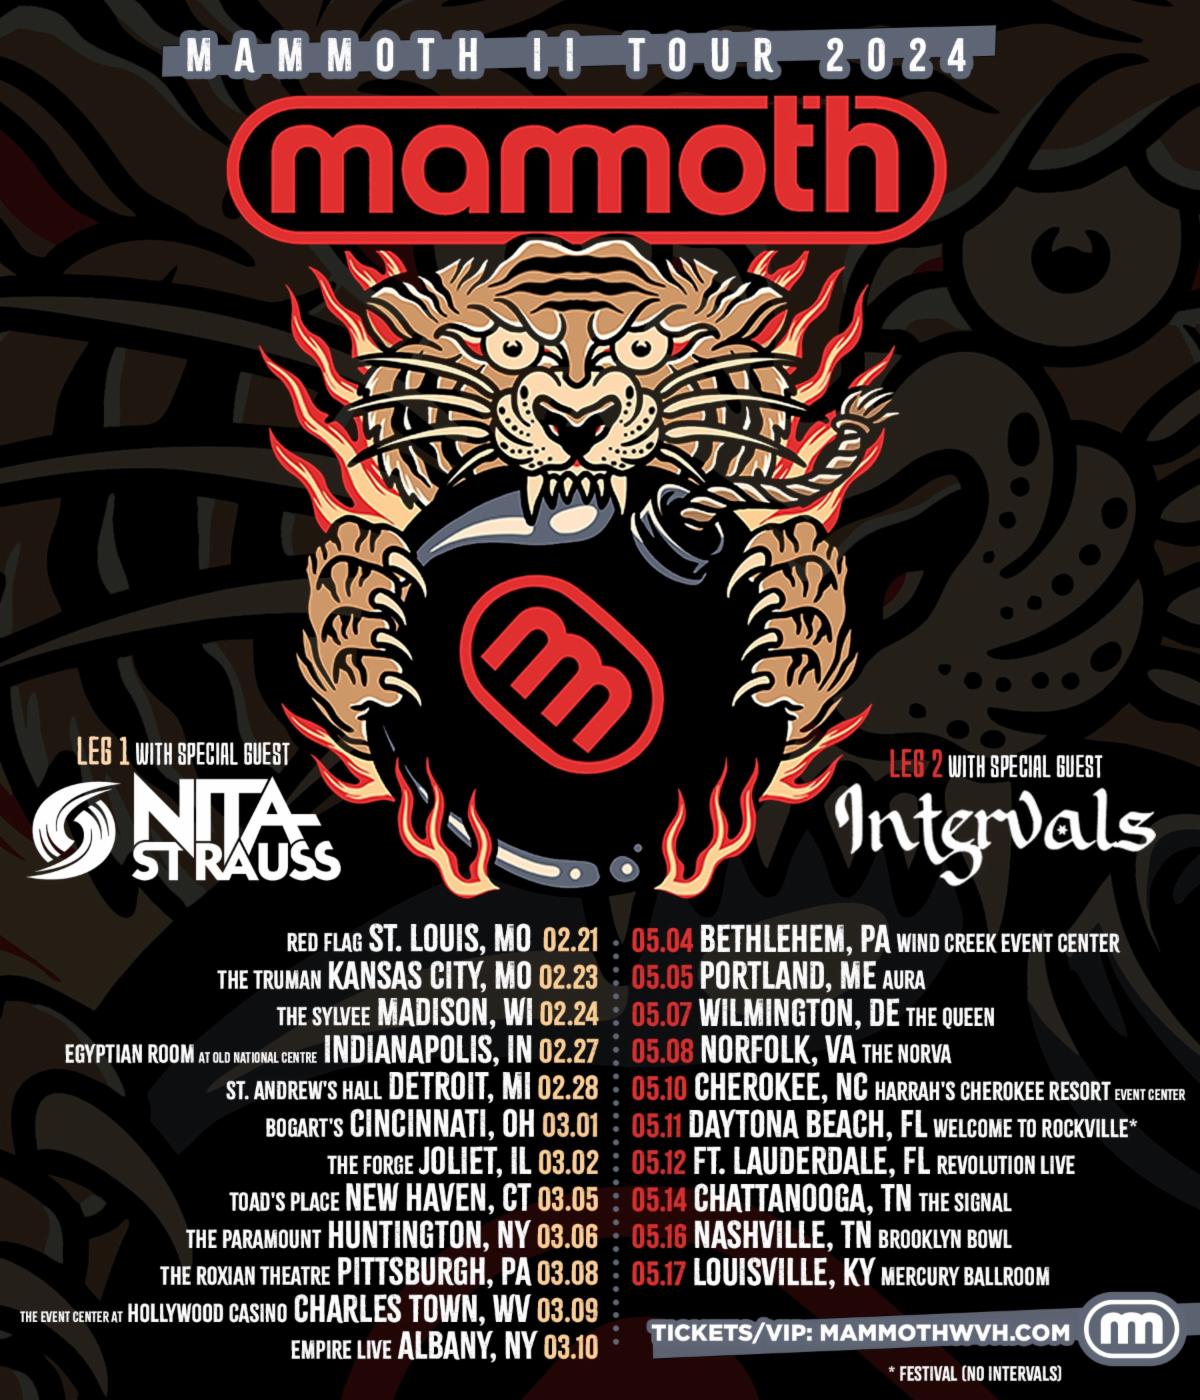 Wolfgang Van Halen’s MAMMOTH WVH Announces 'MAMMOTH II TOUR 2024